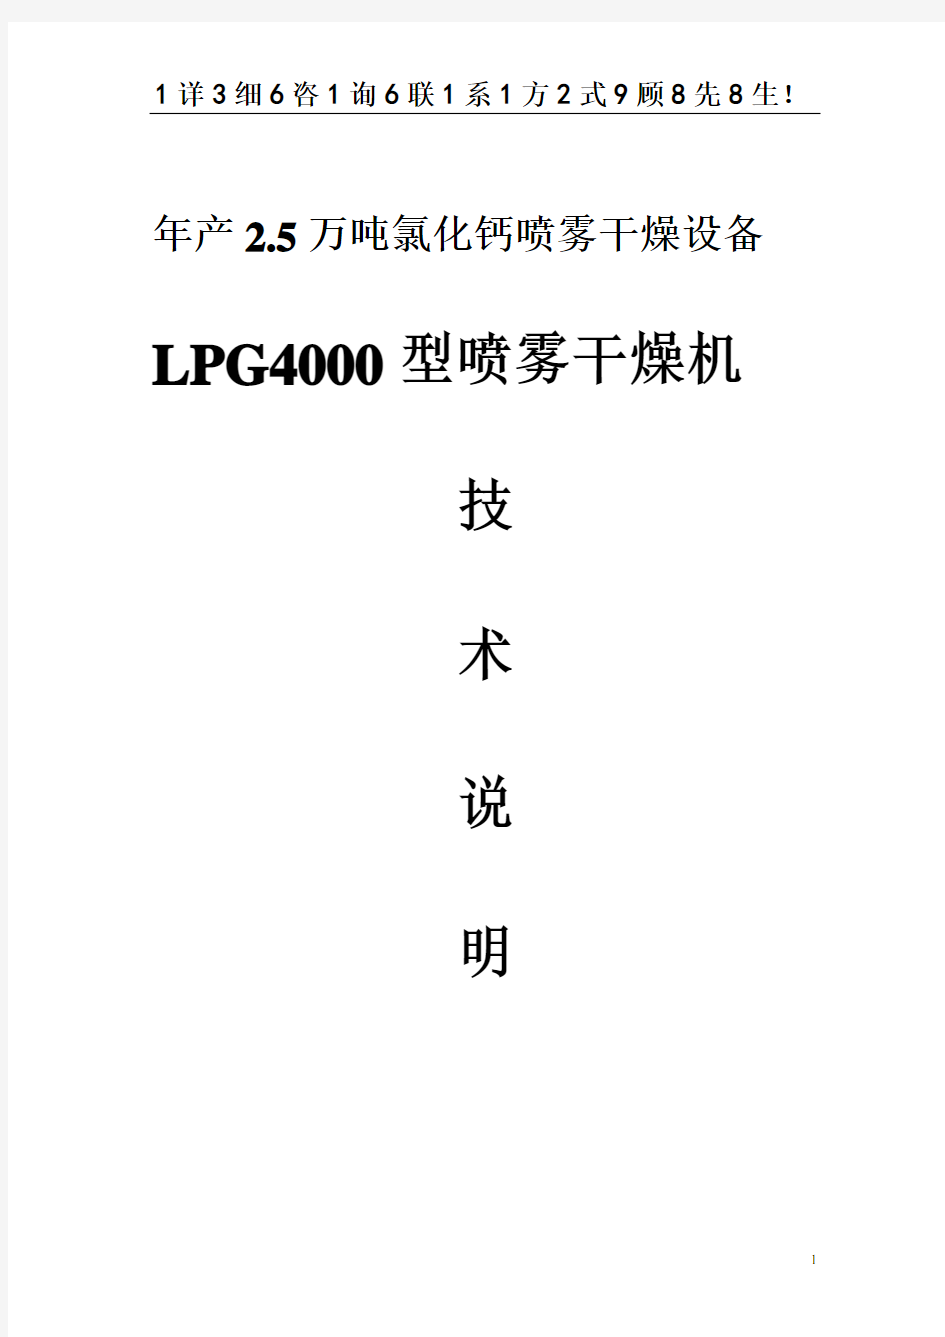 年产2.5万吨氯化钙  LPG-4000型碳酸氯化钙喷雾干燥装置技术方案说明